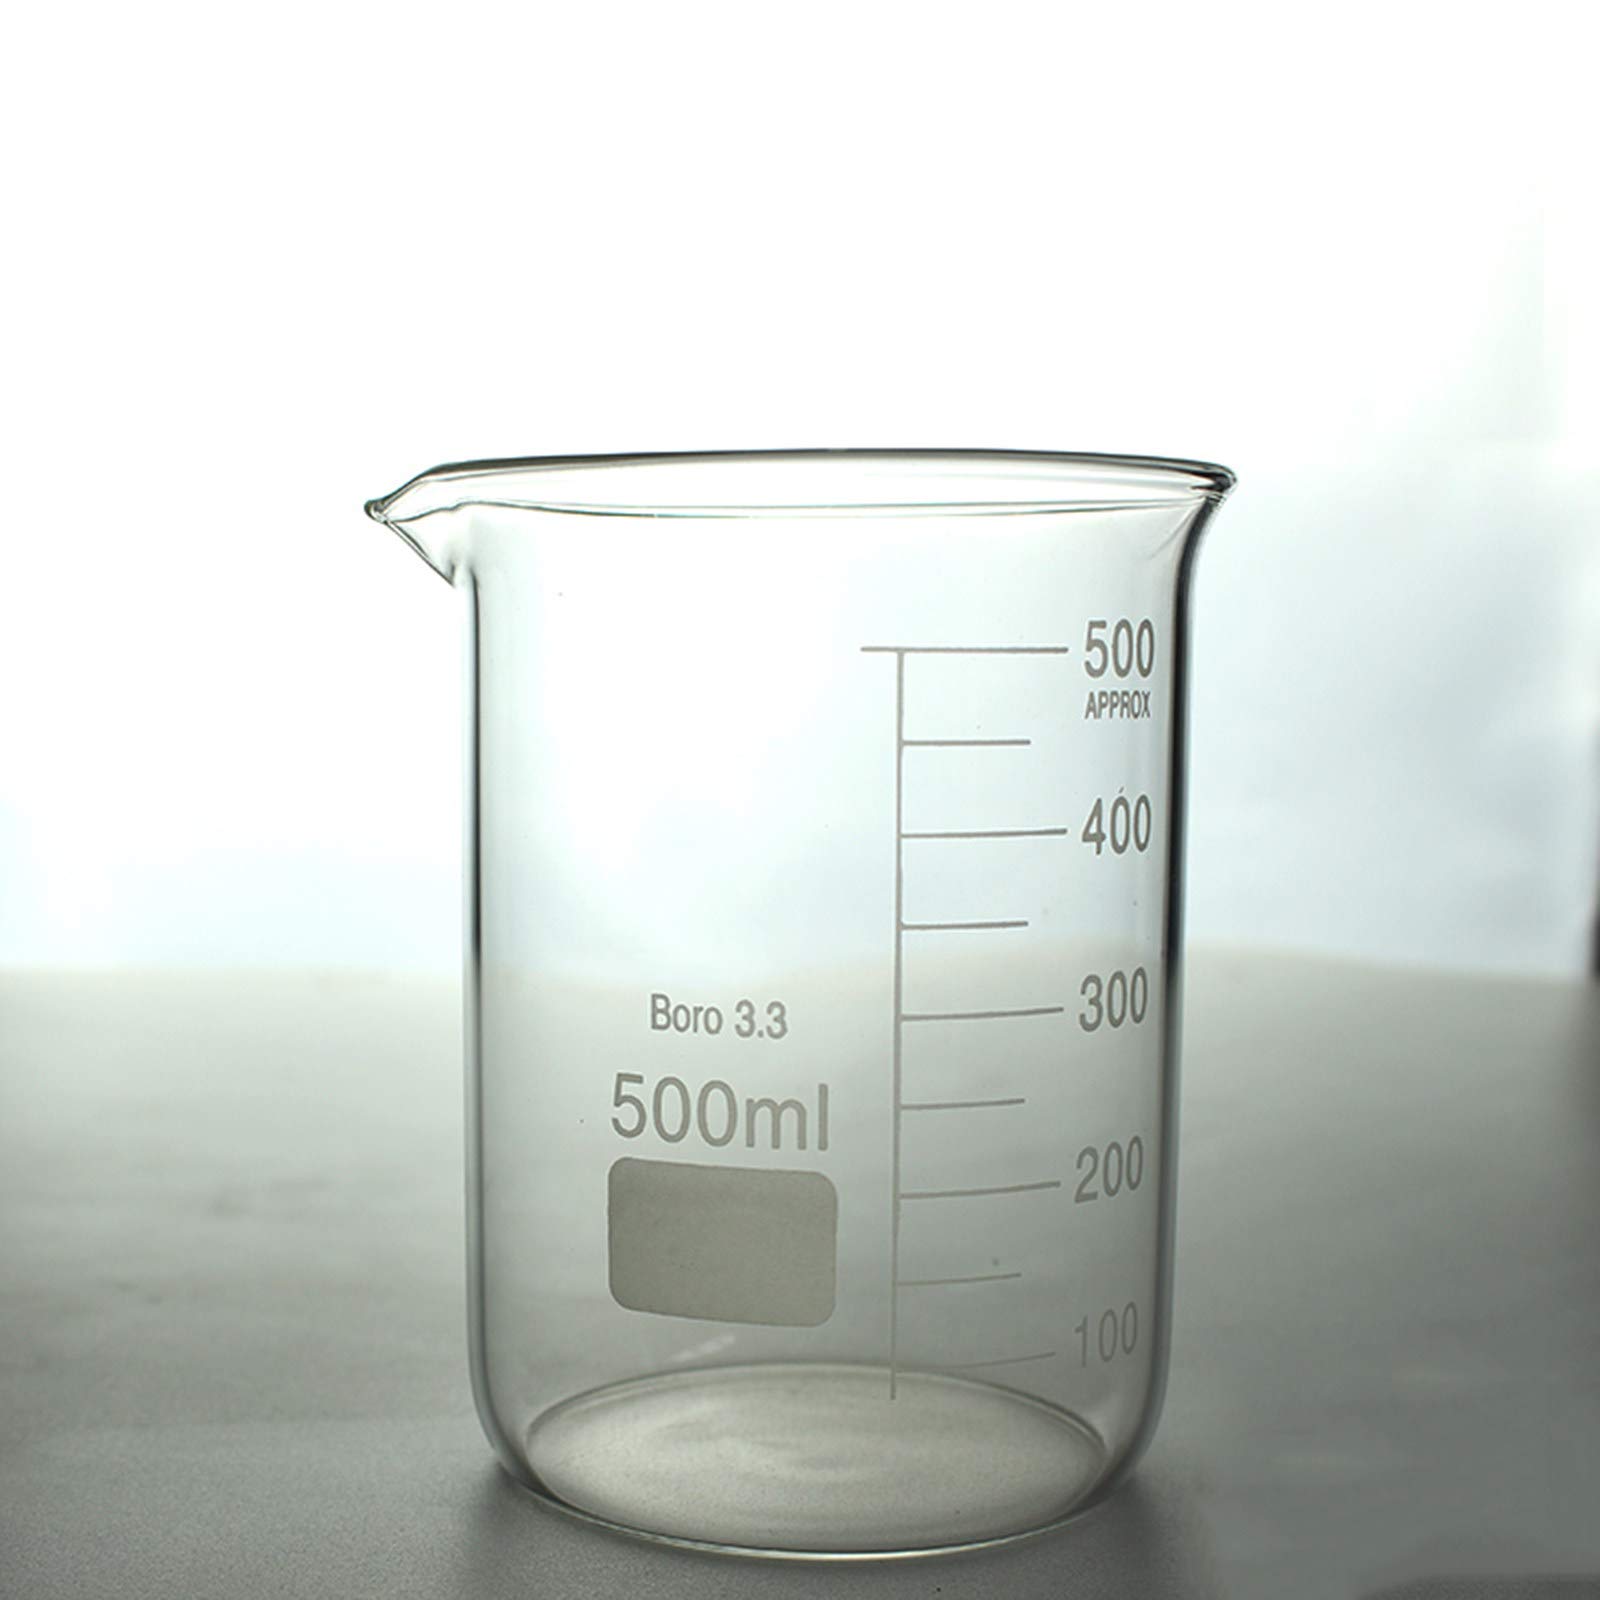 BrightFootBook Abgestufter Glasbeche,Becherglas niedrige Form,Hohe Temperaturbeständigkeit,Für Labor-,Wissenschaftliche Experimente,150Ml/250Ml,500ml